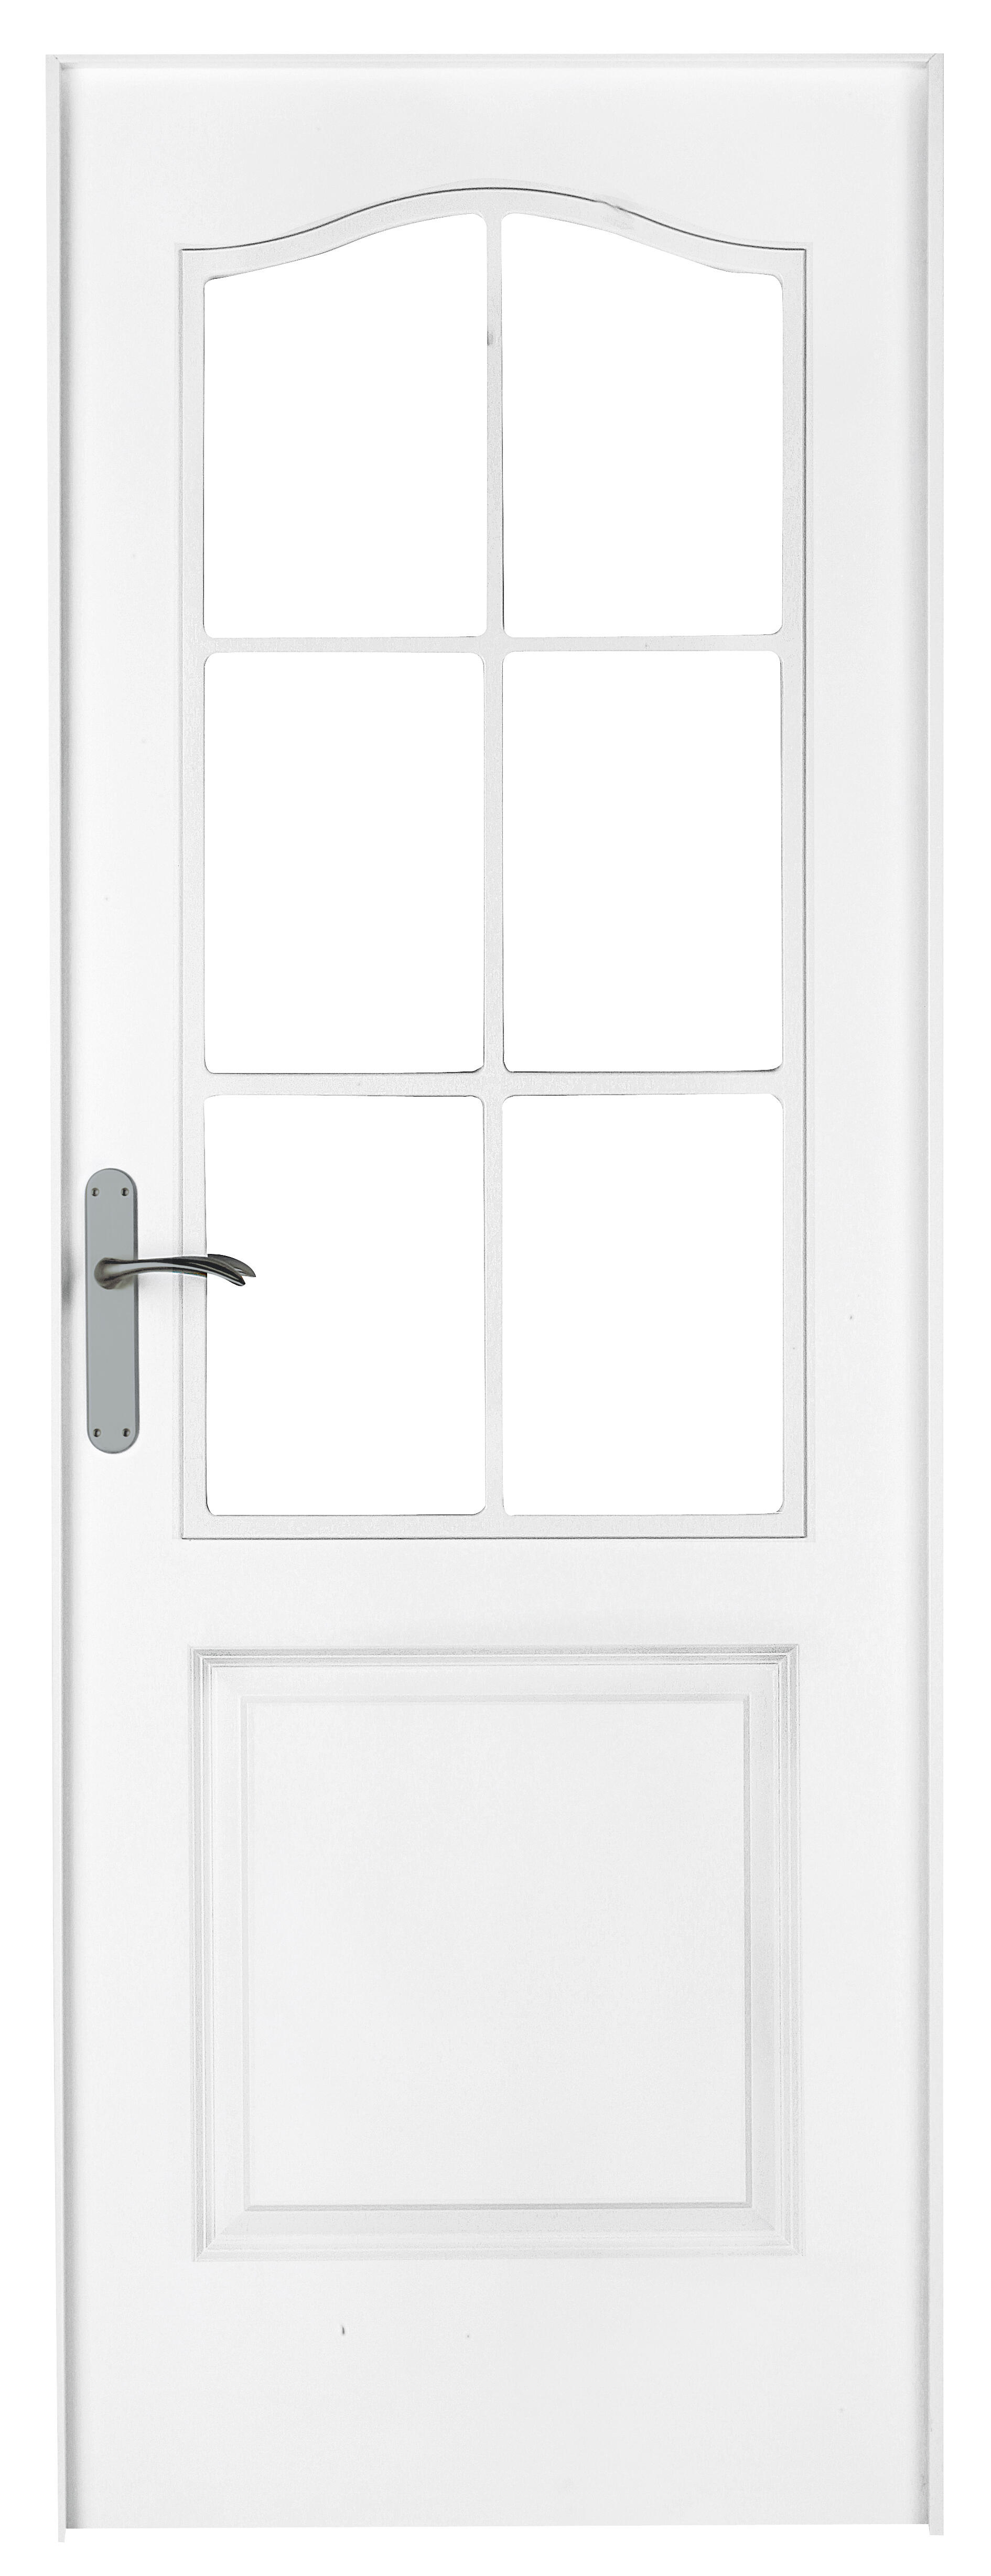 Puerta abatible bonn blanca aero blanco derecha con cristal de 90x30 y 82.5cm